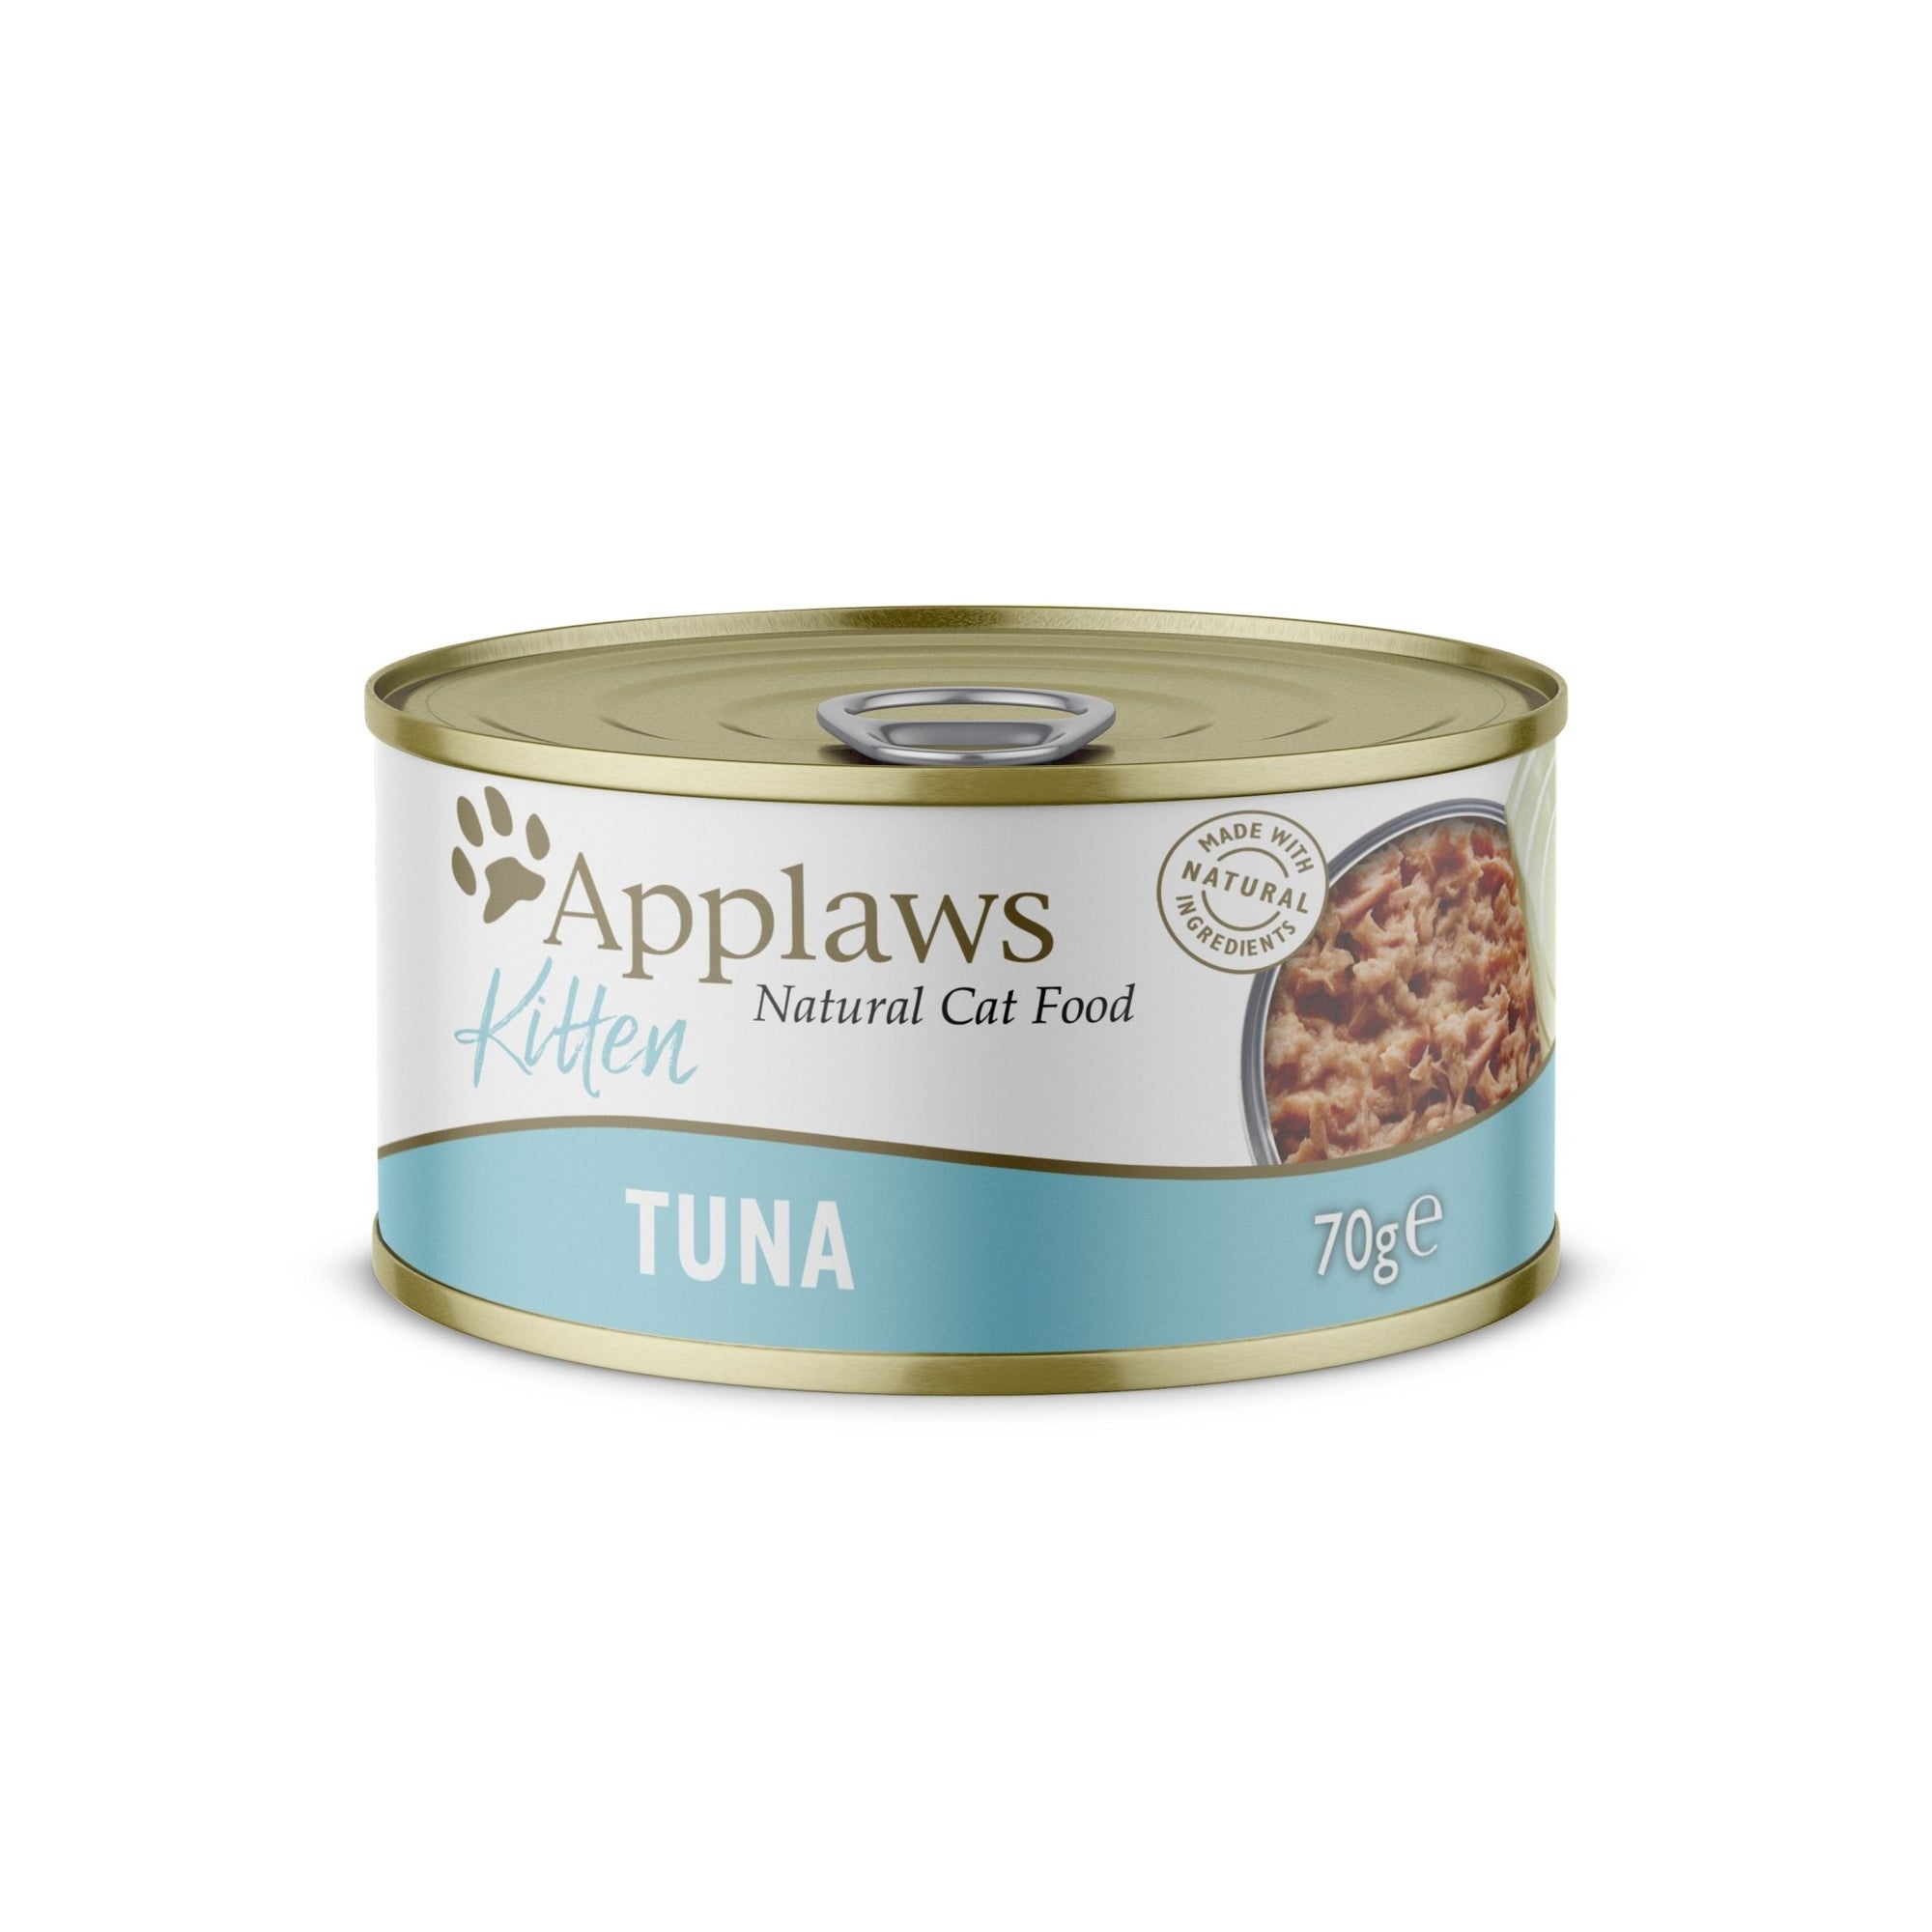 Applaws Kitten Tuna Tins 24x70g, Applaws,